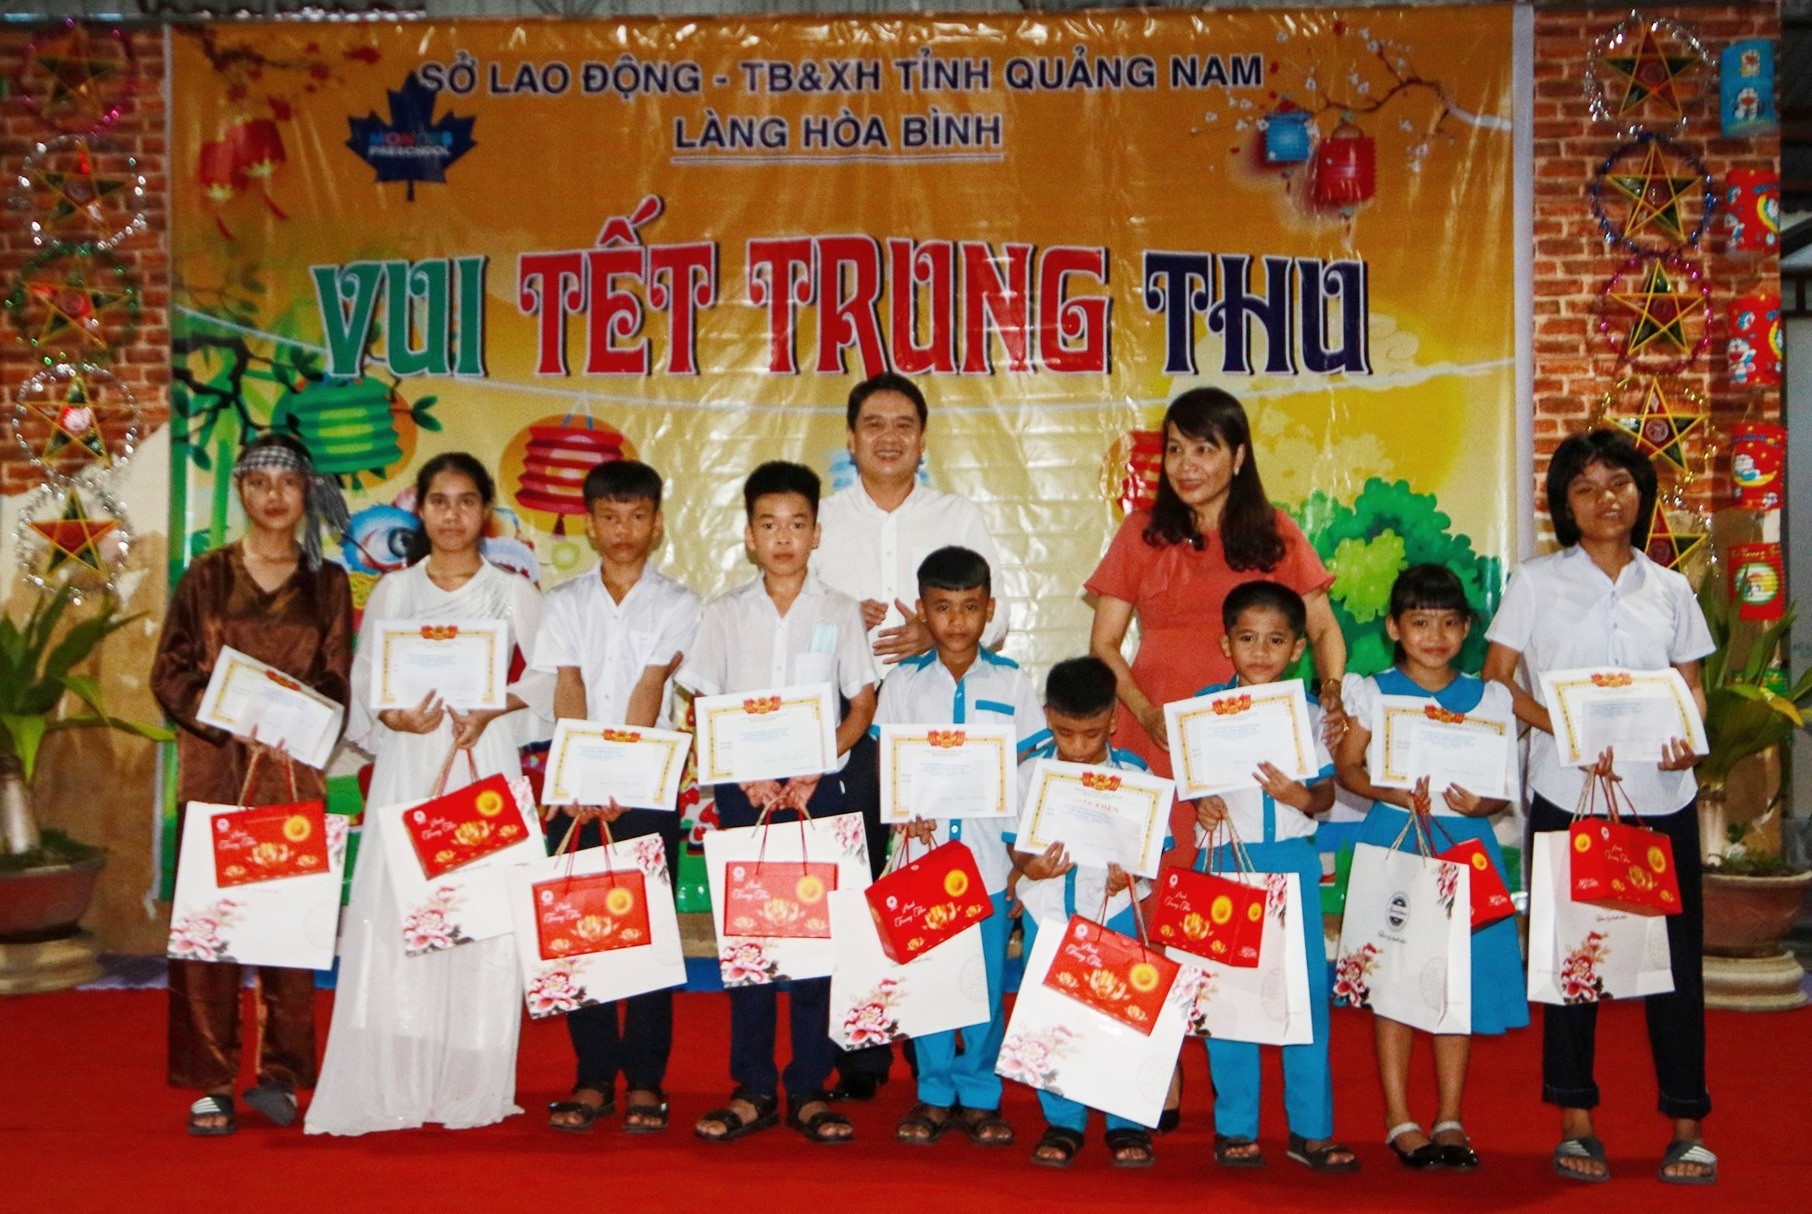 Phó Chủ tịch UBND tỉnh Trần Văn Tân và đại diện lãnh đạo Sở Lao động - Thương binh và Xã hội tỉnh tặng quà cho các em nhỏ có thành tích học tập xuất sắc. Ảnh: T.C